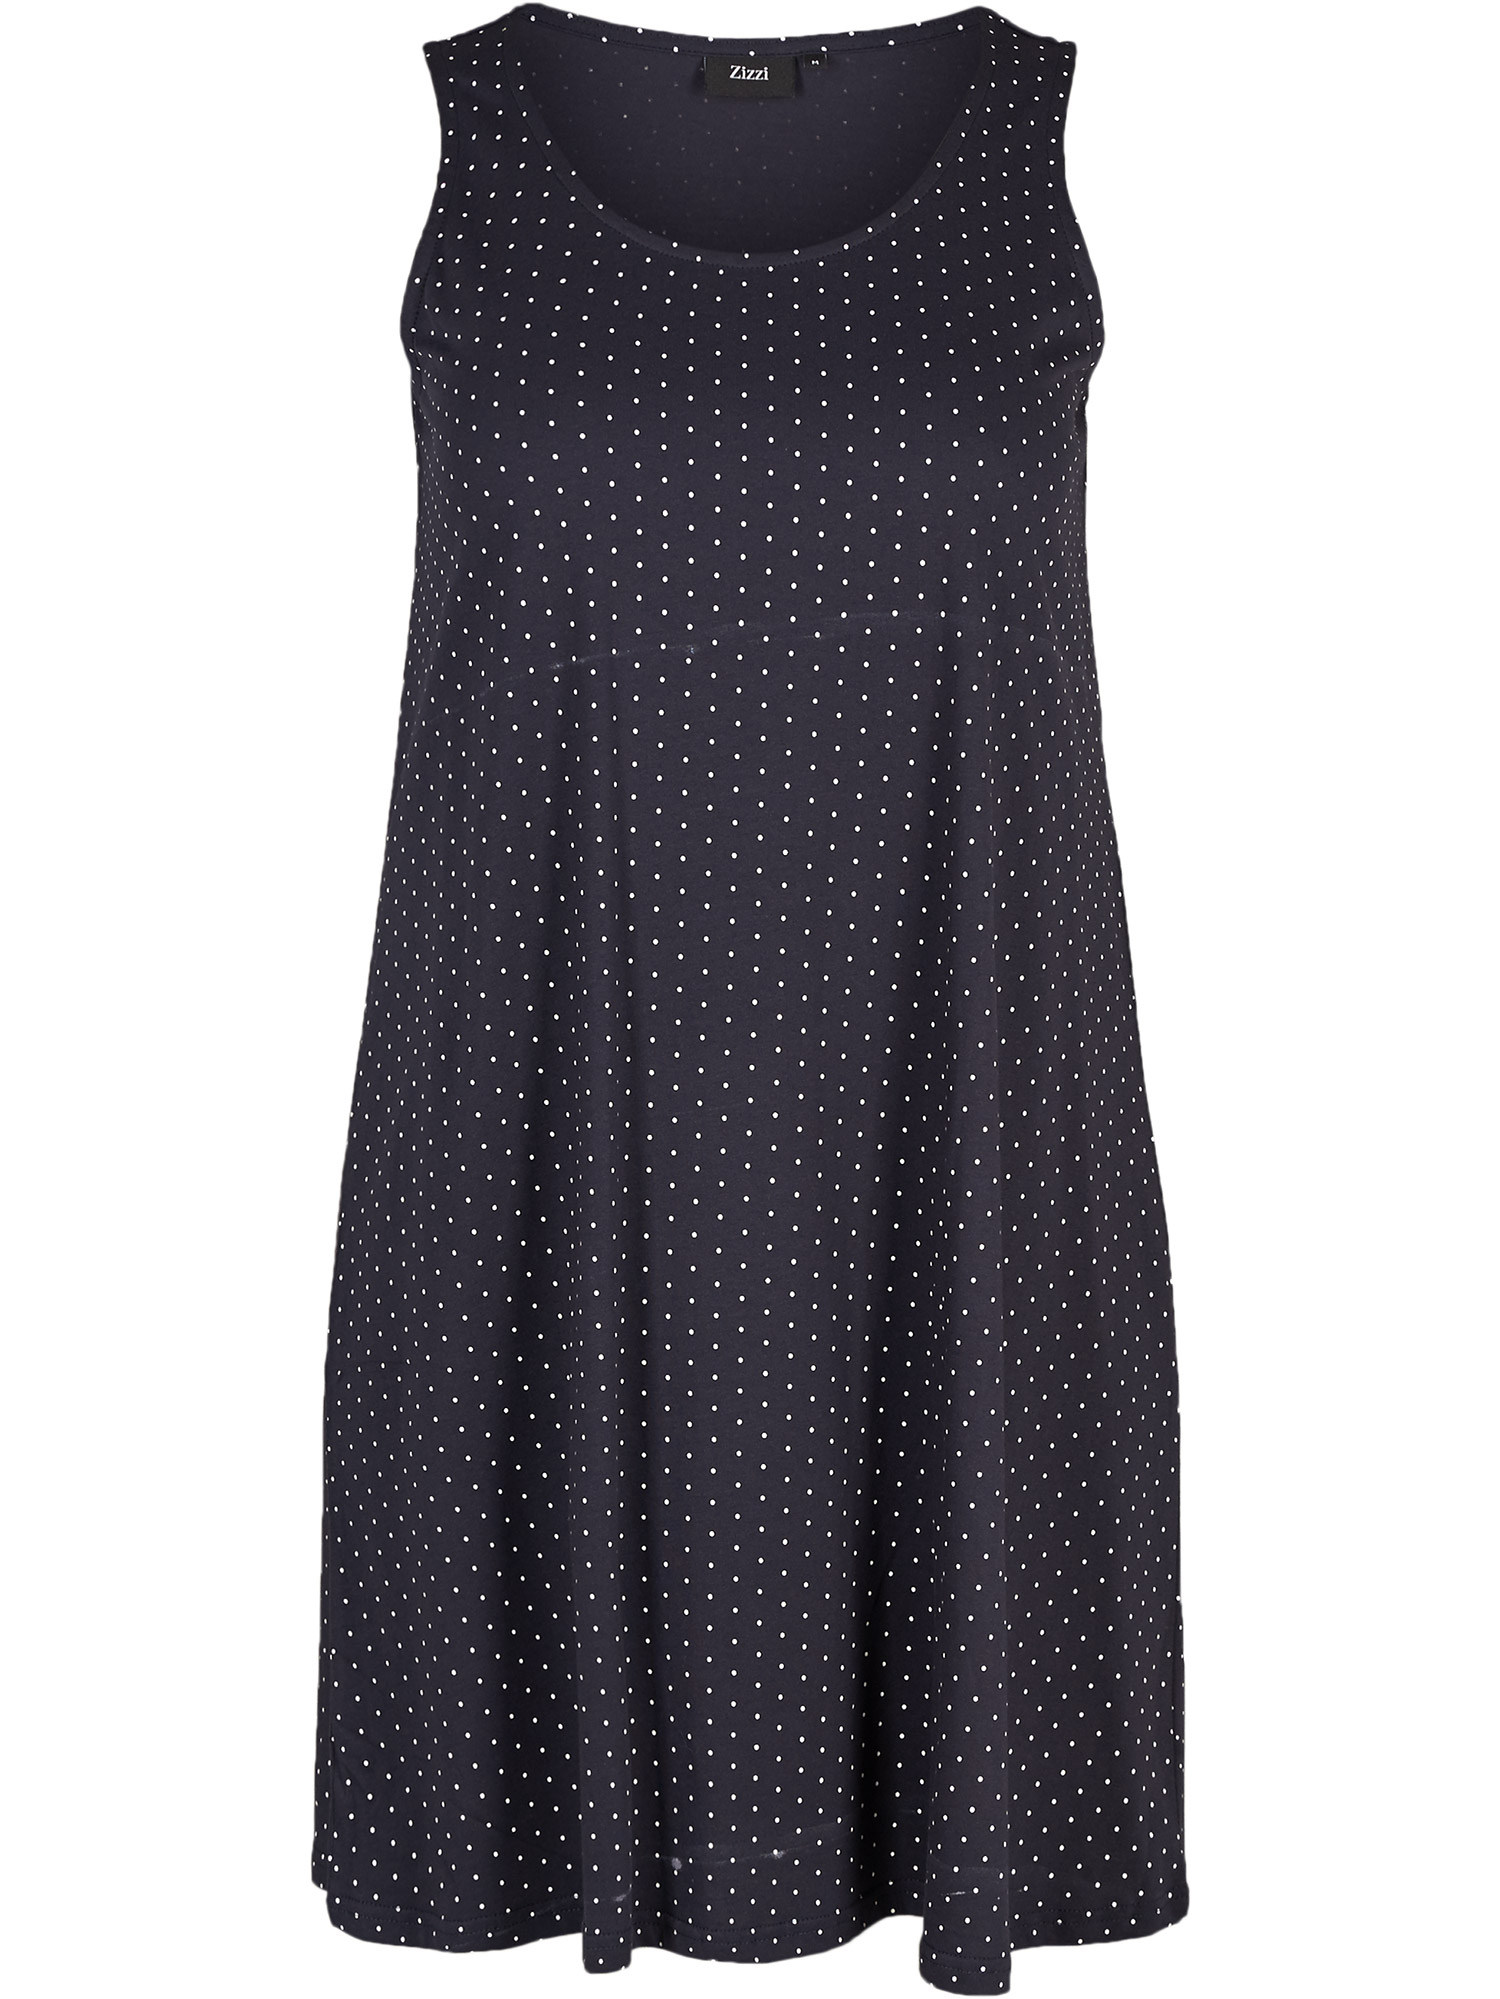 Mørkeblå bomulls kjole med hvite prikker fra Zizzi